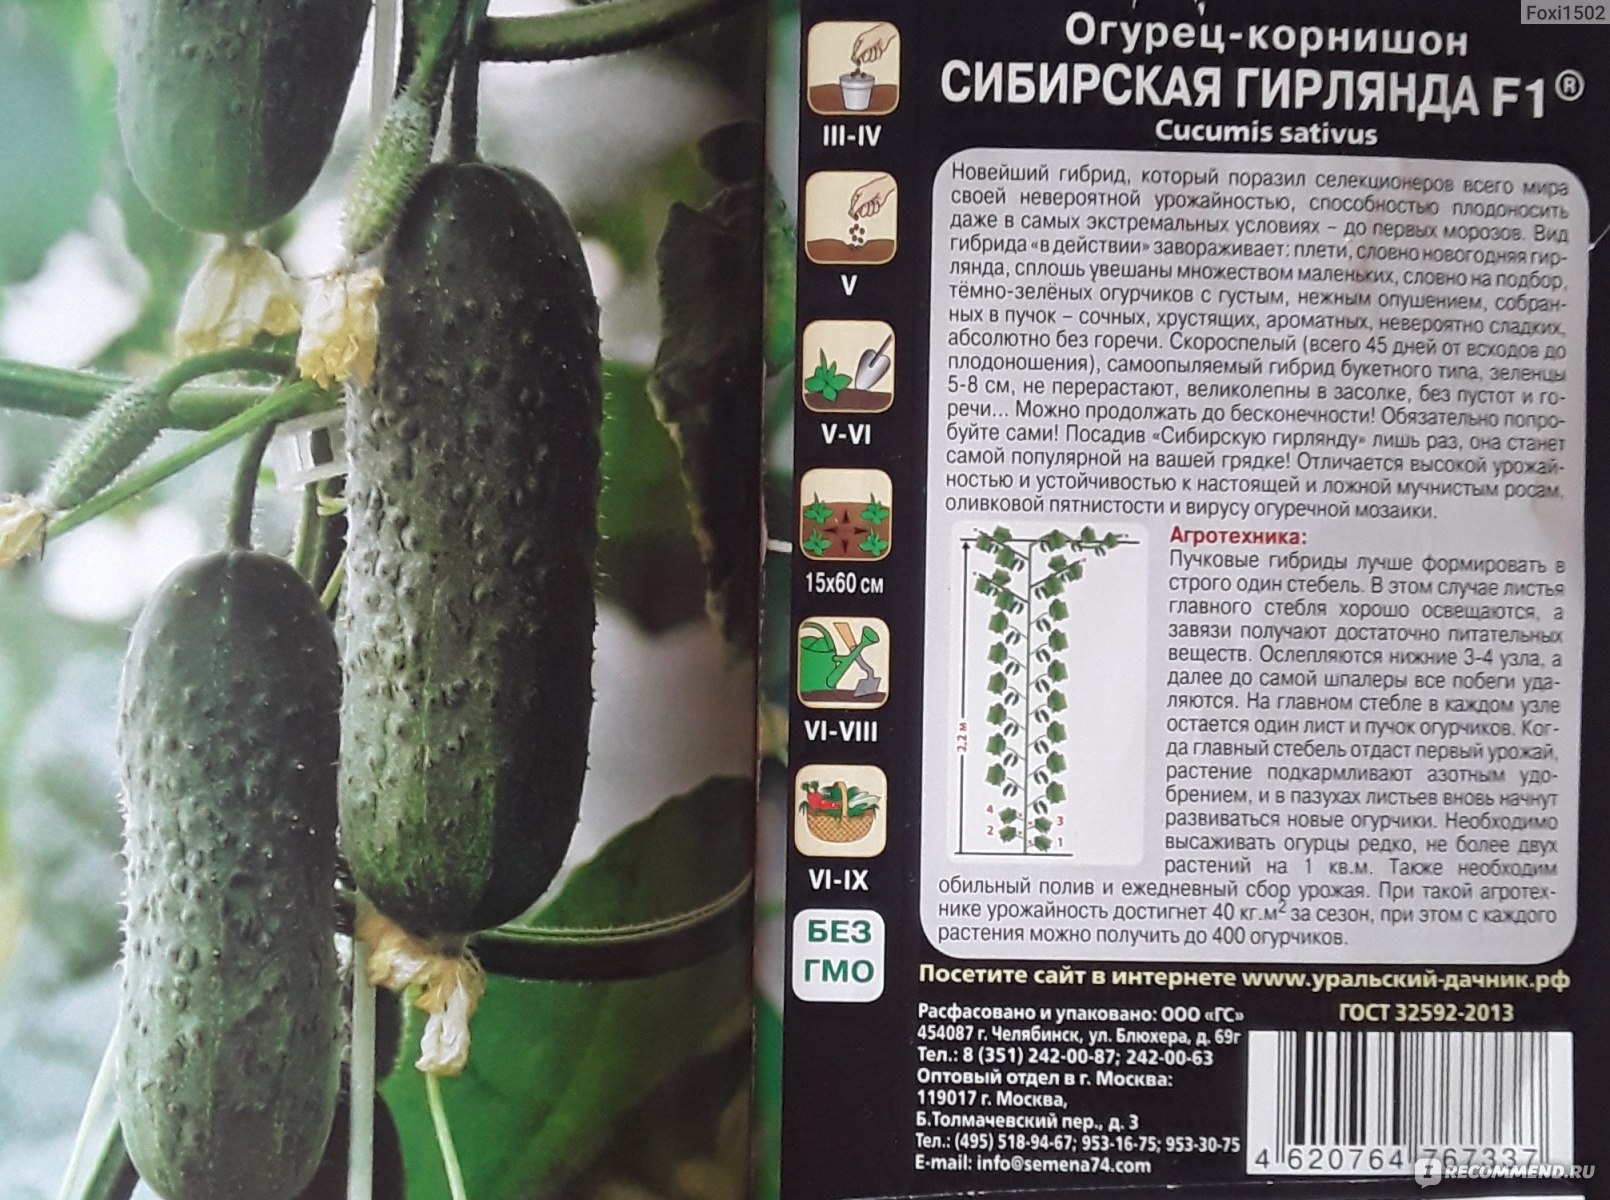 Огурец сибирская гирлянда f1: отзывы, фото урожая, описание суперпучкового корнишона, урожайность сорта, посадка, выращивание и уход